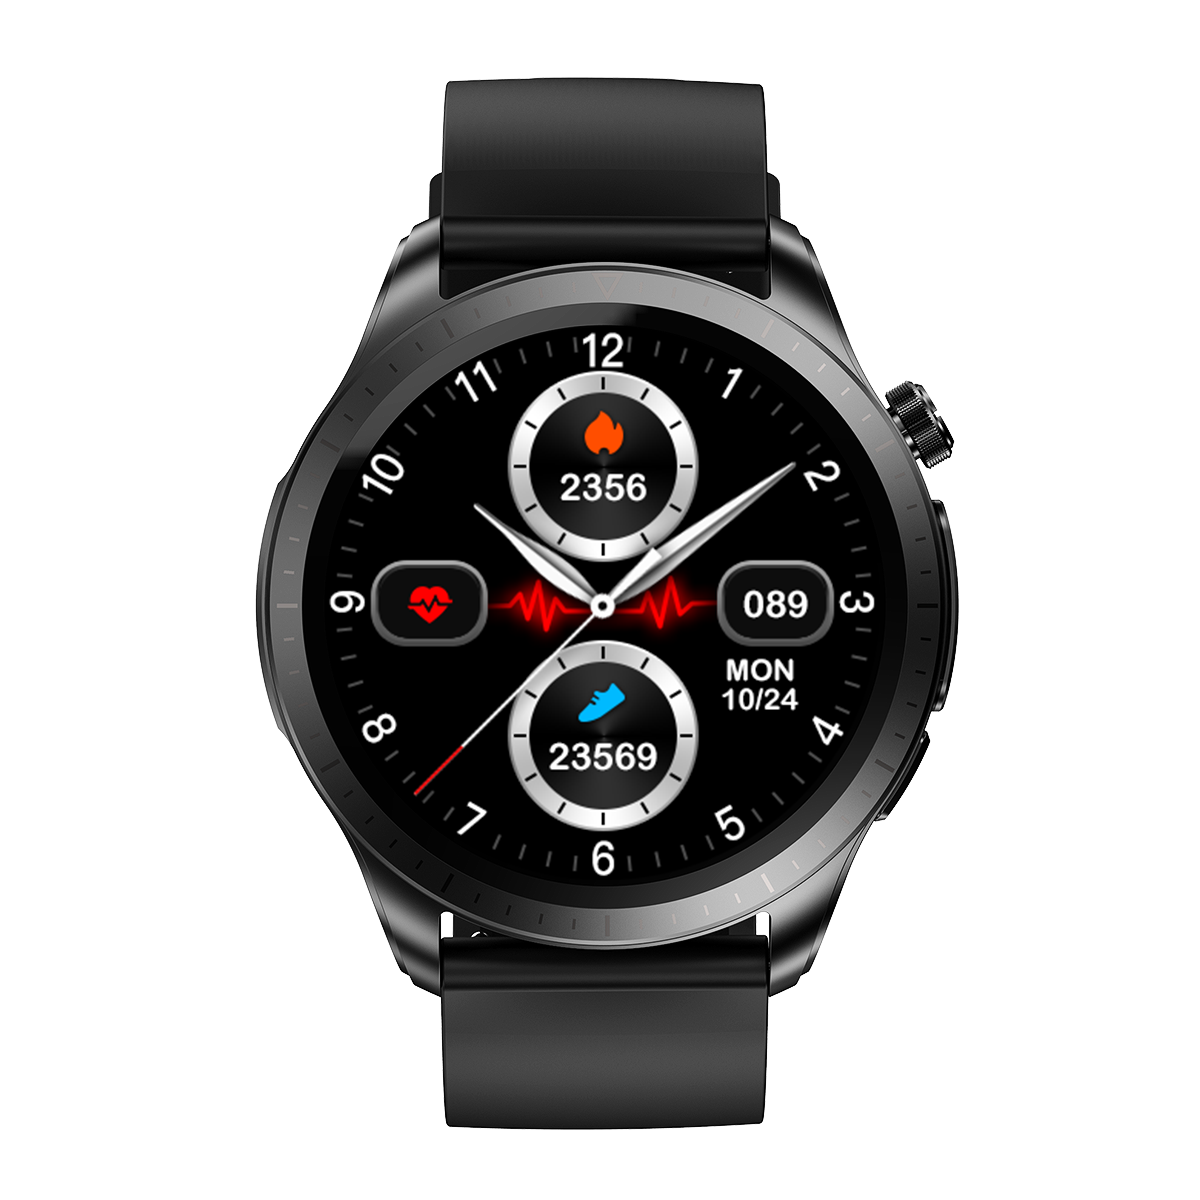 E420 1.39 inch HD Screen ECG Monitor Heart Rate Blood Pressure SpO2 Monitor Fitness Tracker 280mAh Battery BT5.1 IP68 Waterproof Smart Watch COD